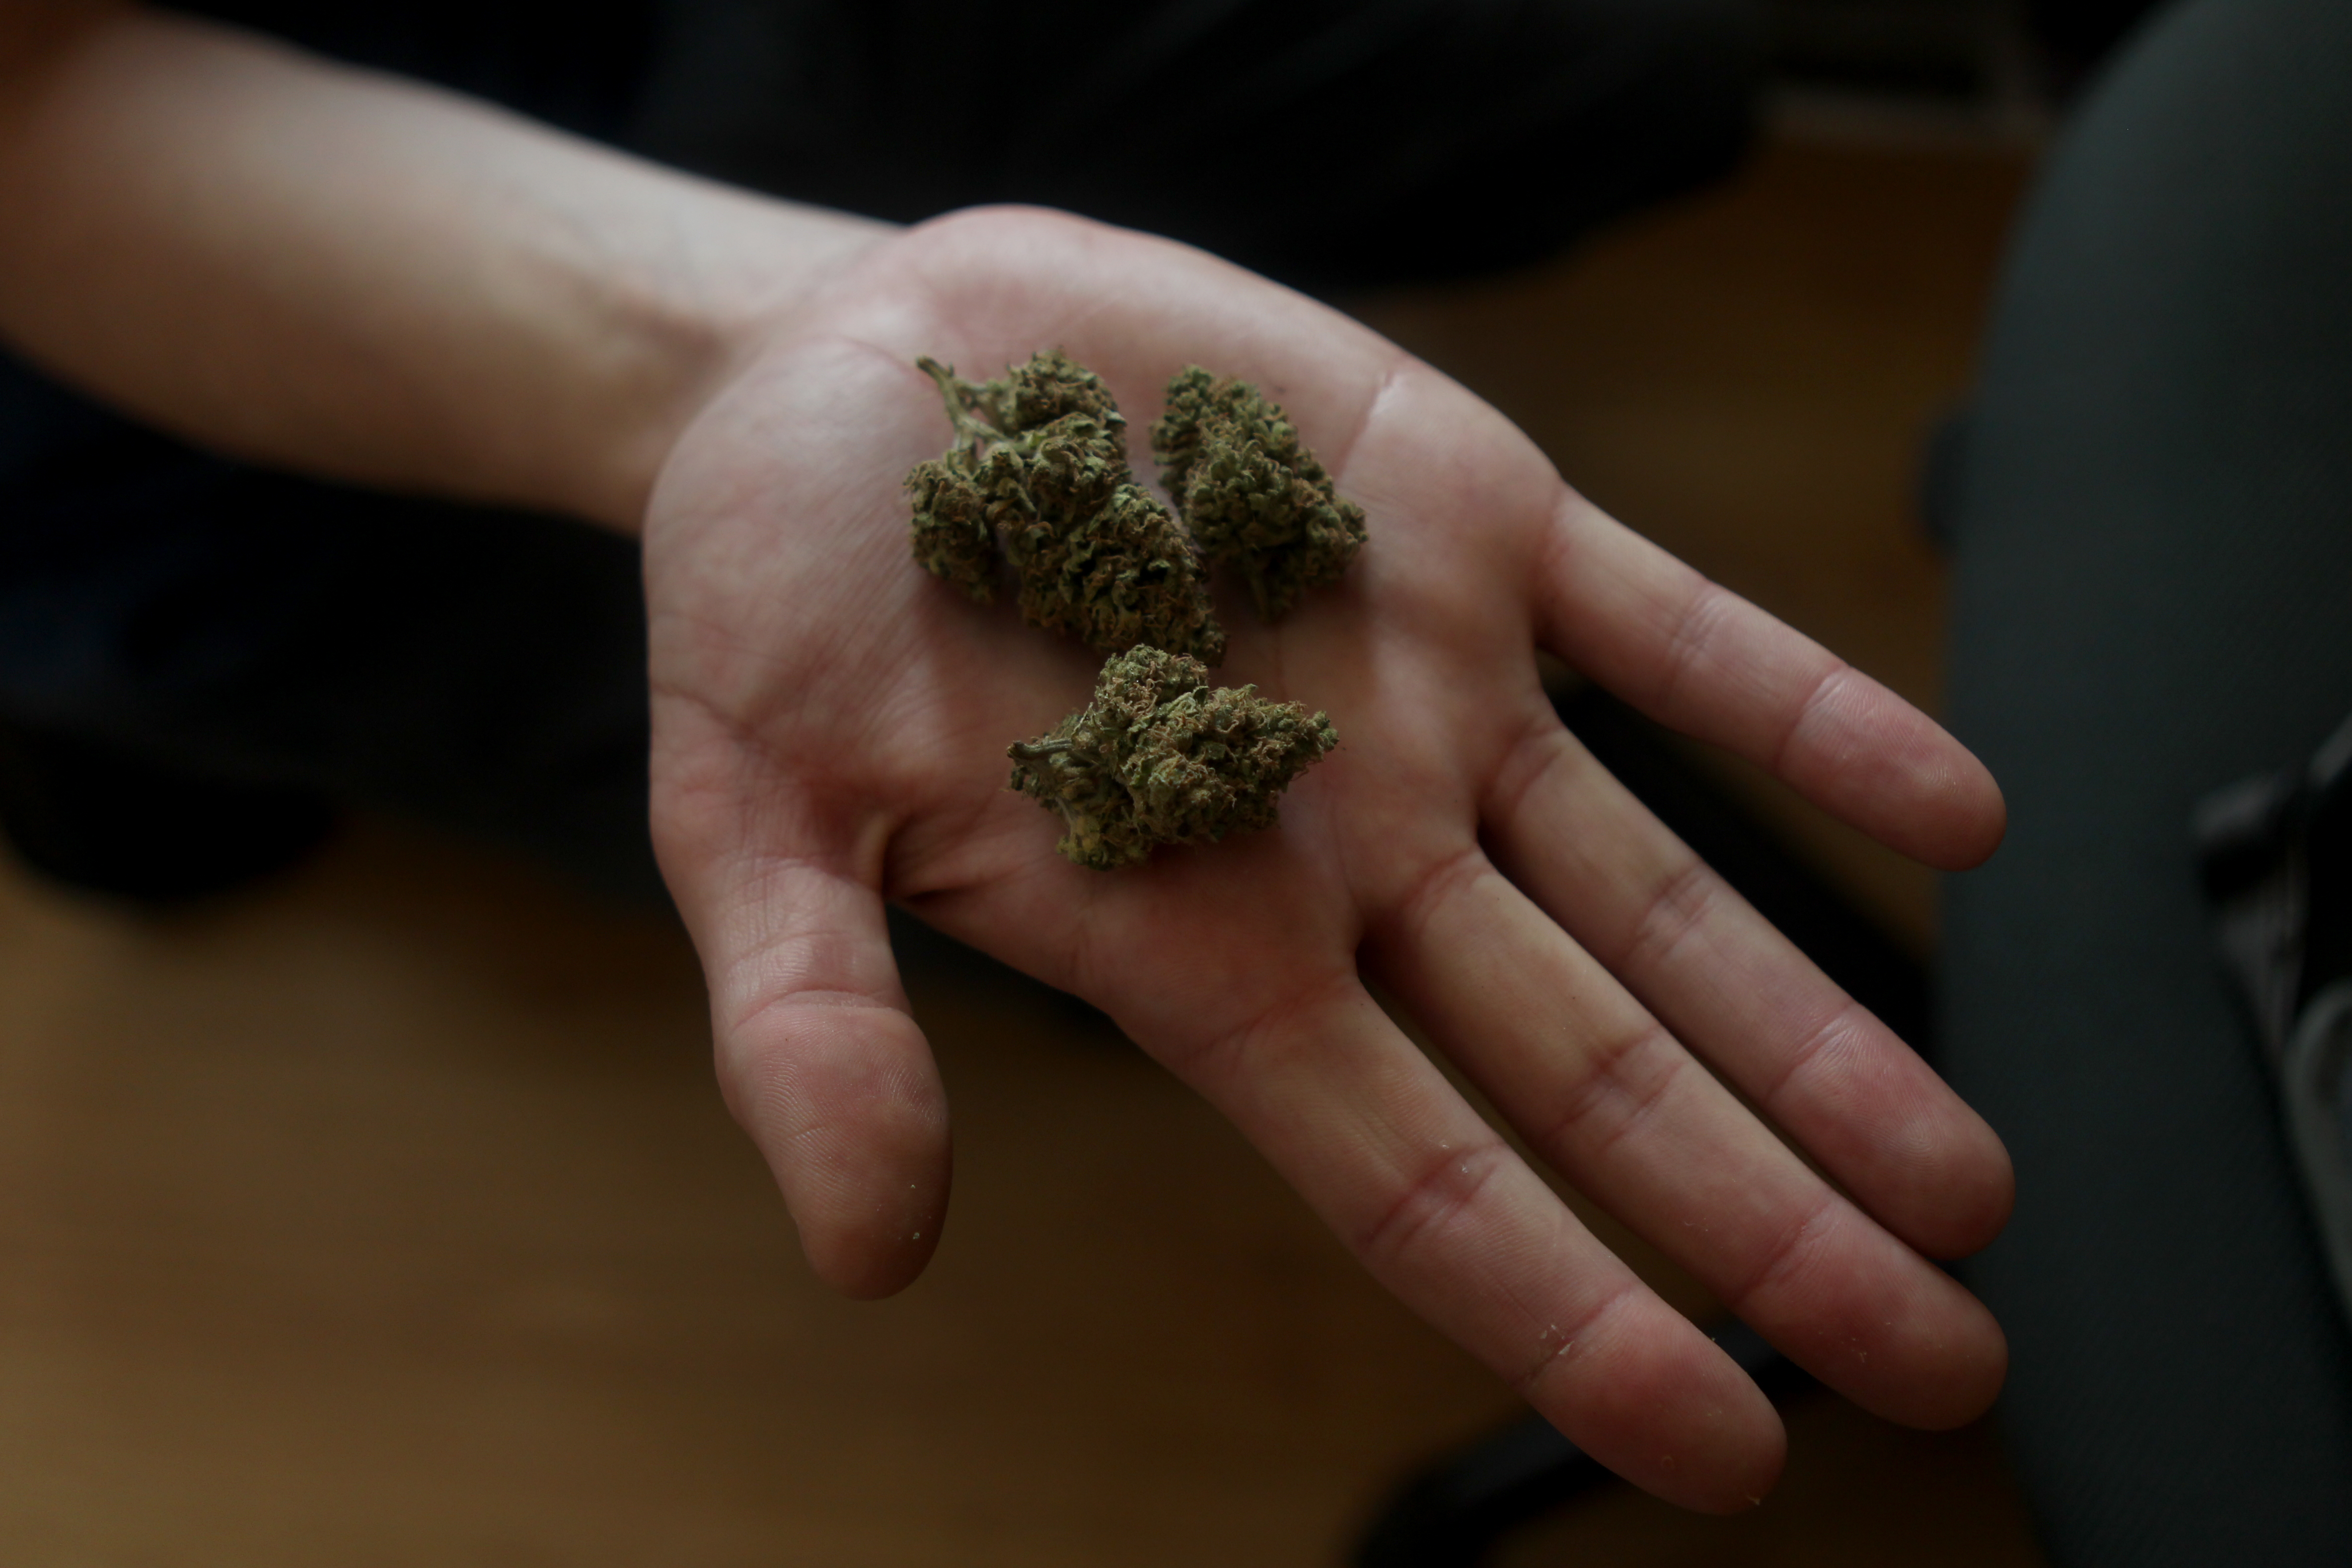 La Corte confirmó la despenalización del cultivo de cannabis para uso medicinal, pero con inscripción previa en un registro oficial